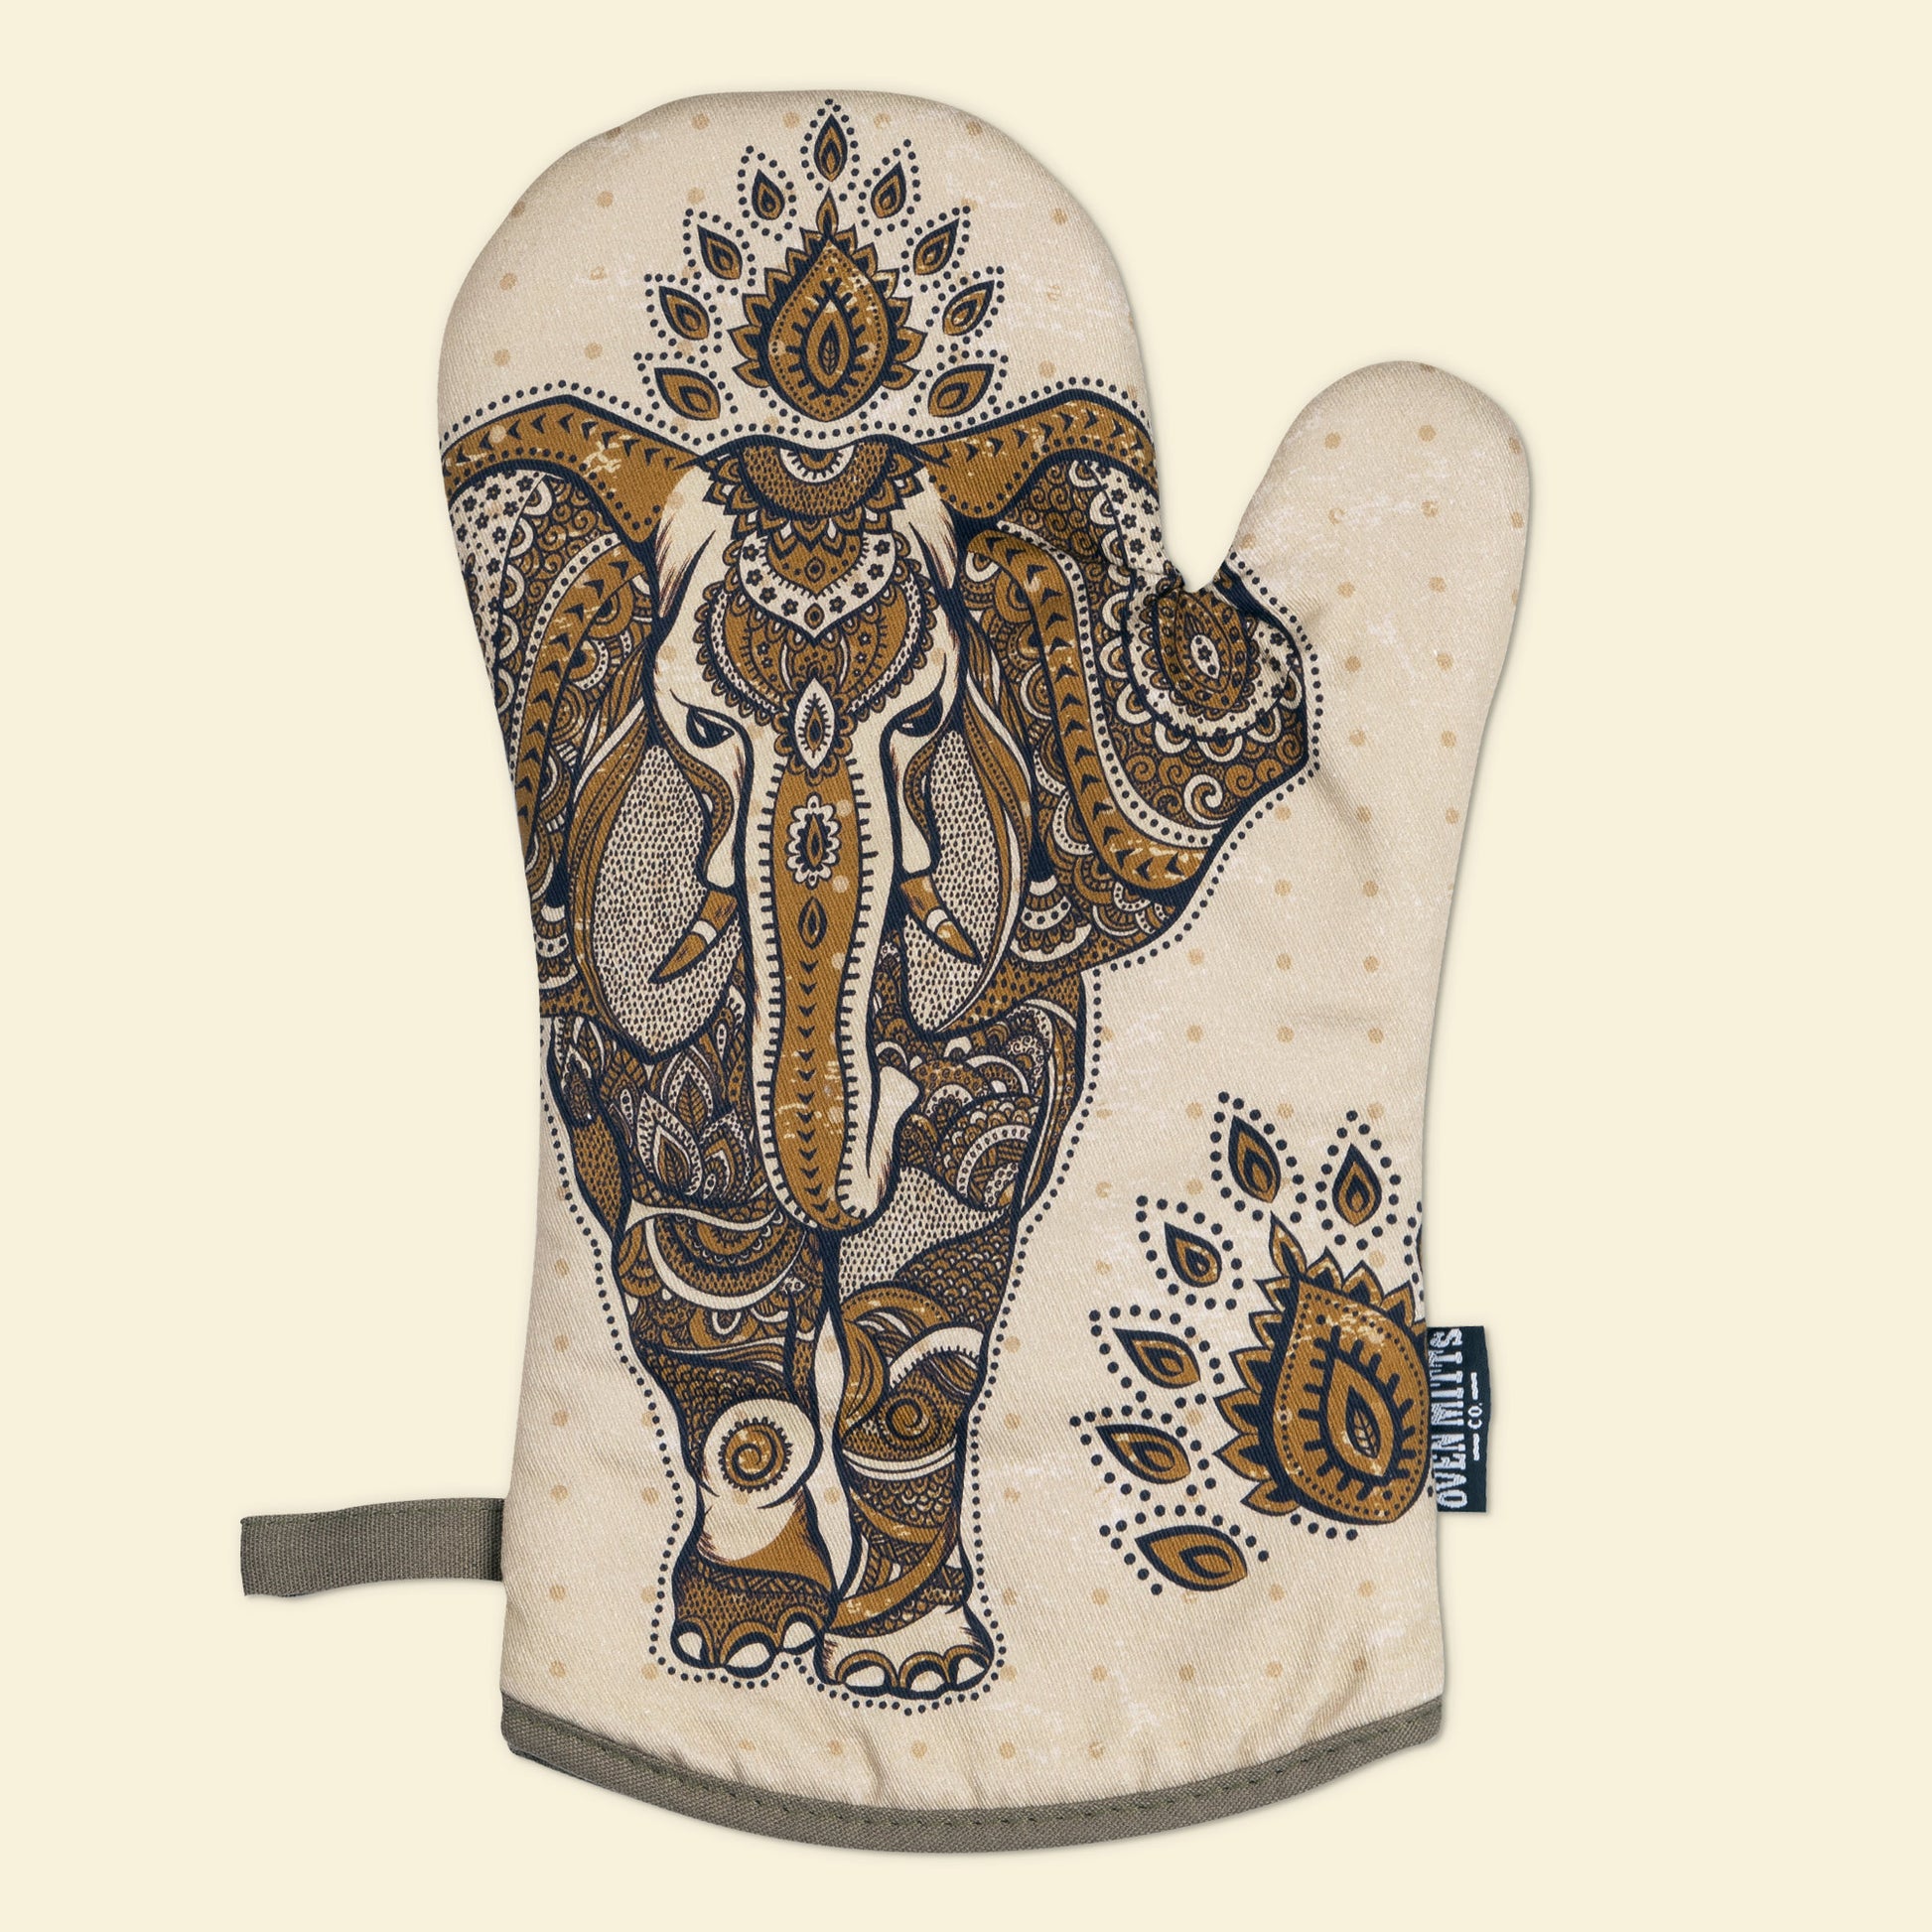 Boho Elephant Oven Mitts glove premium